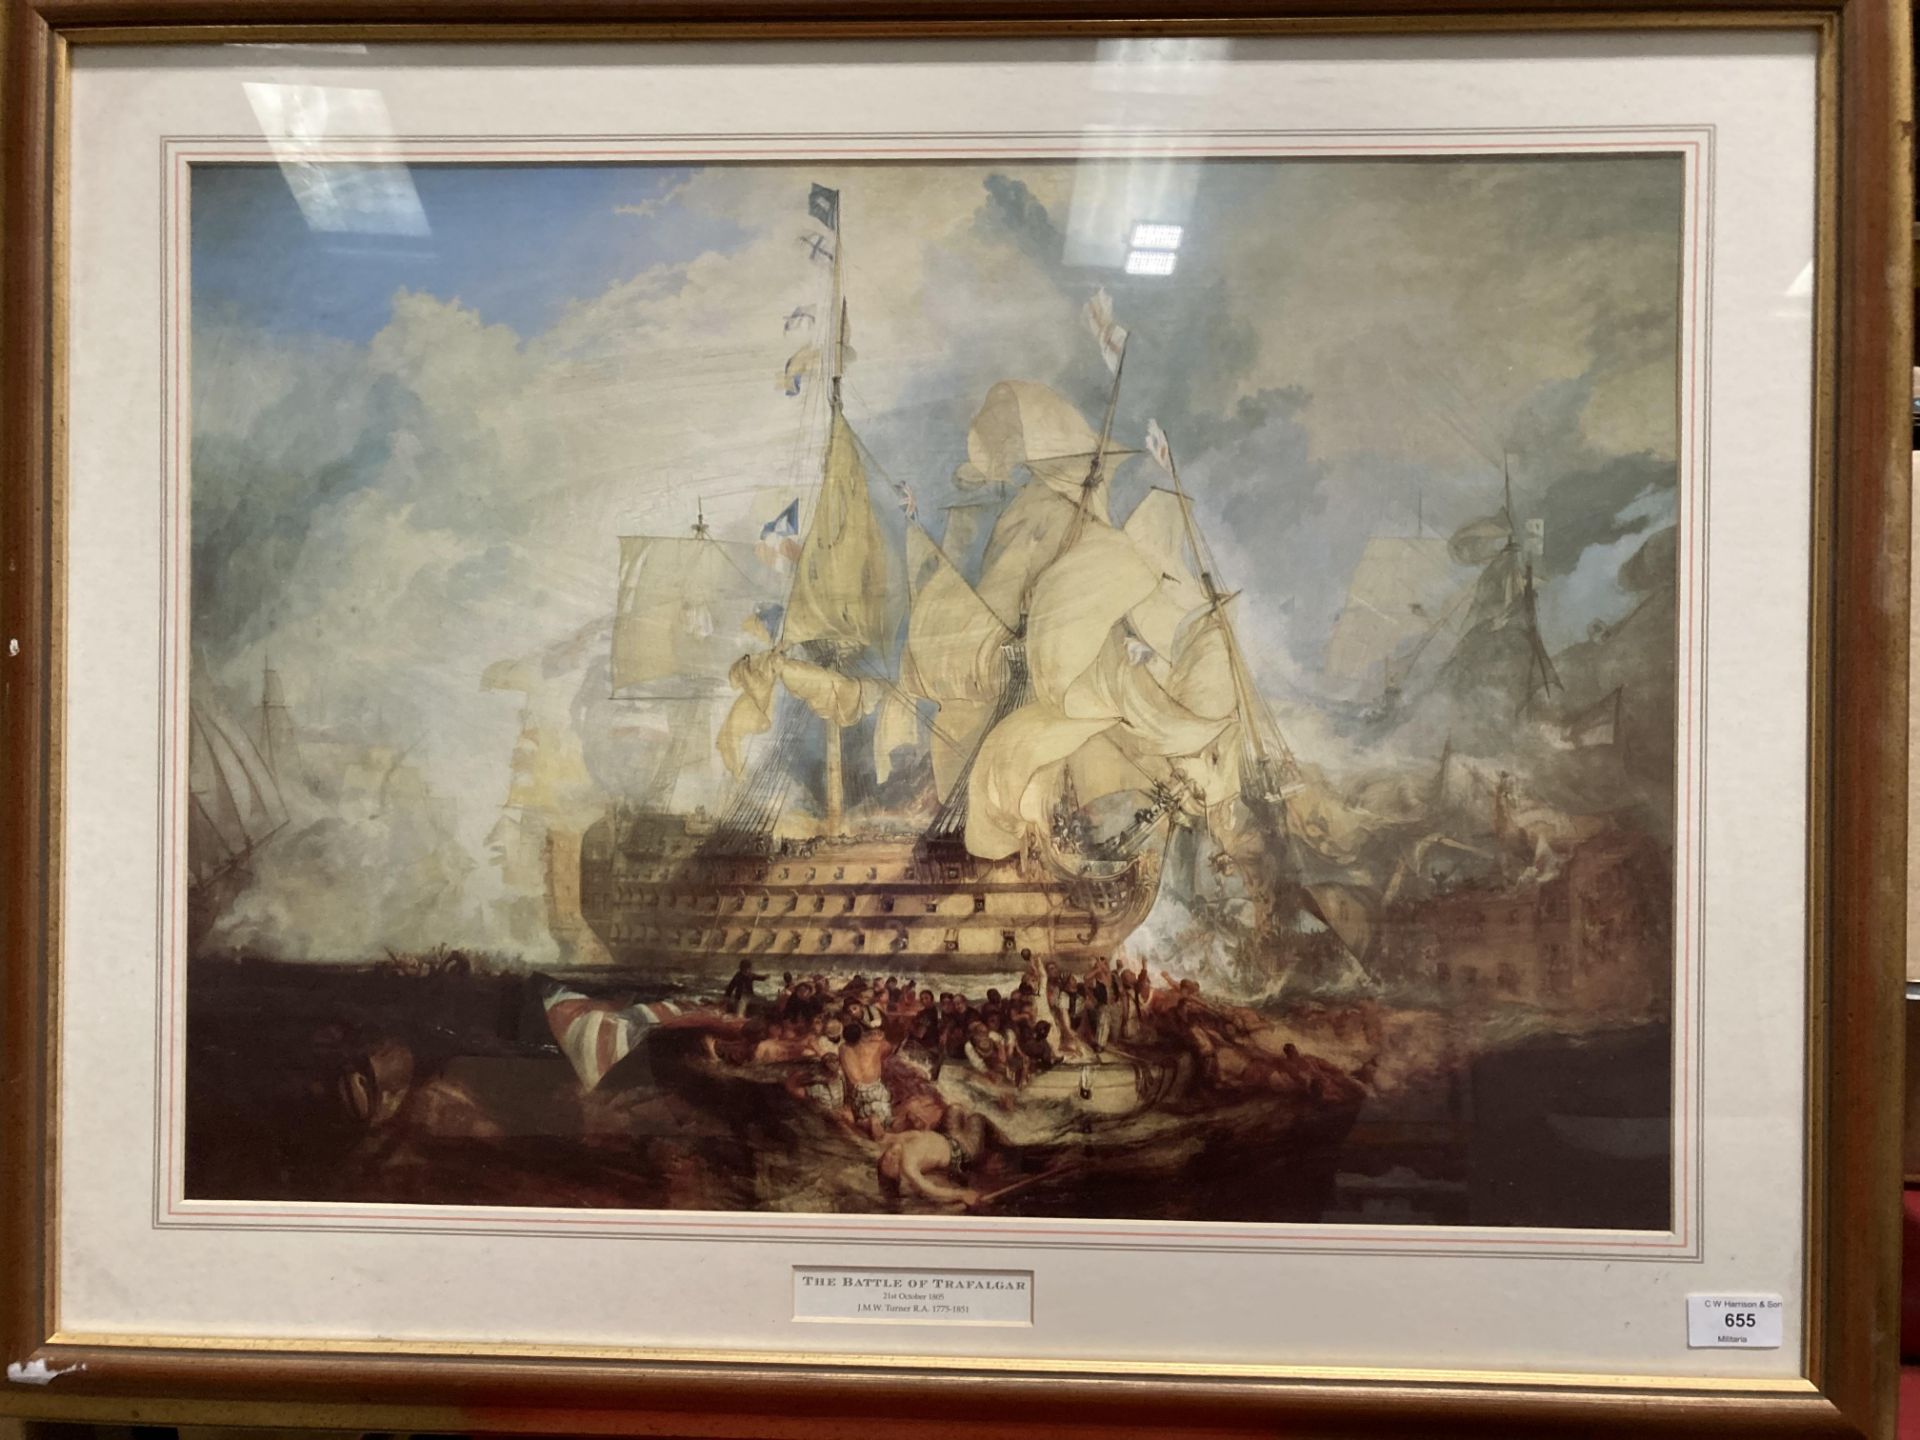 JMW Turner RA (1775-1851), framed print 'The Battle of Trafalgar 21st October 1805',